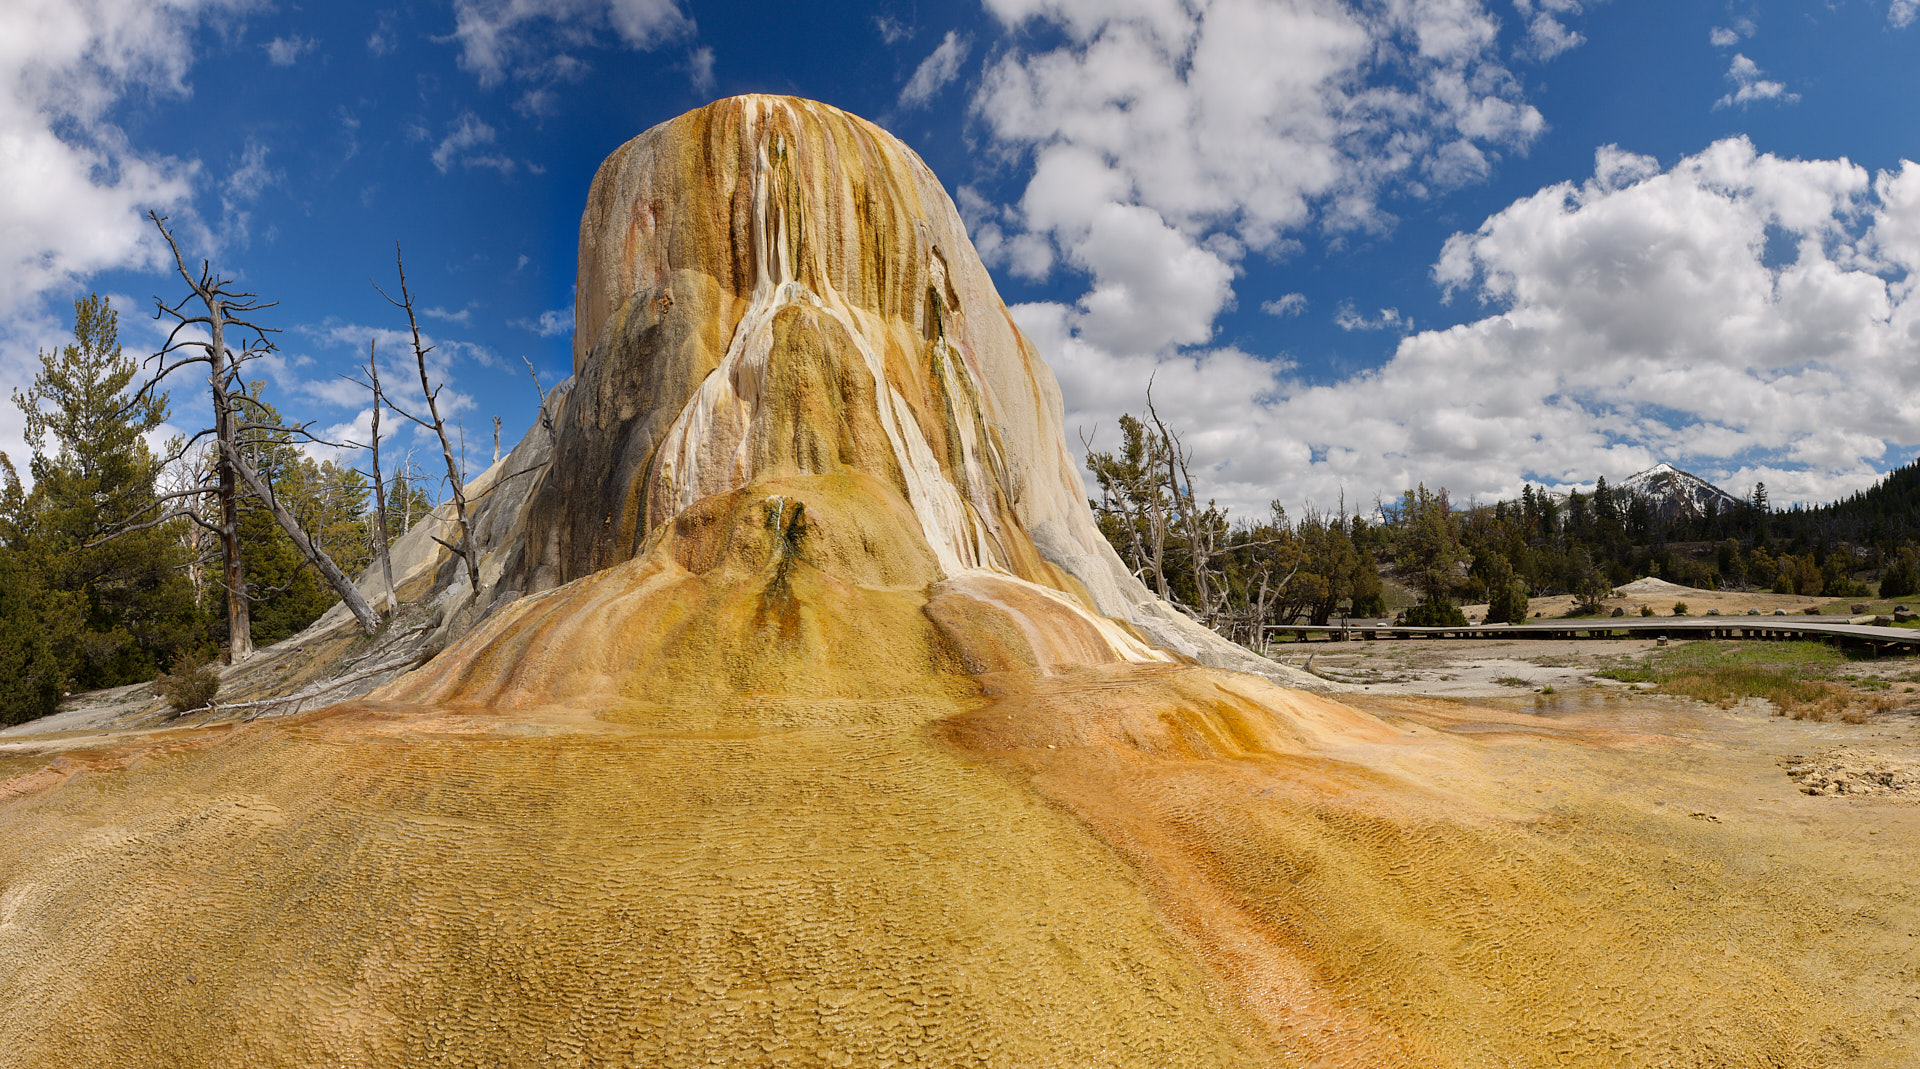 Die OrangeSpring Mound Quelle hat über die Jahrtausende einen gewaltigen Konus aufgetürmt.Kamera: NIKON D3X Brennweite: 24mm 1/100 s bei Blende f/11.0